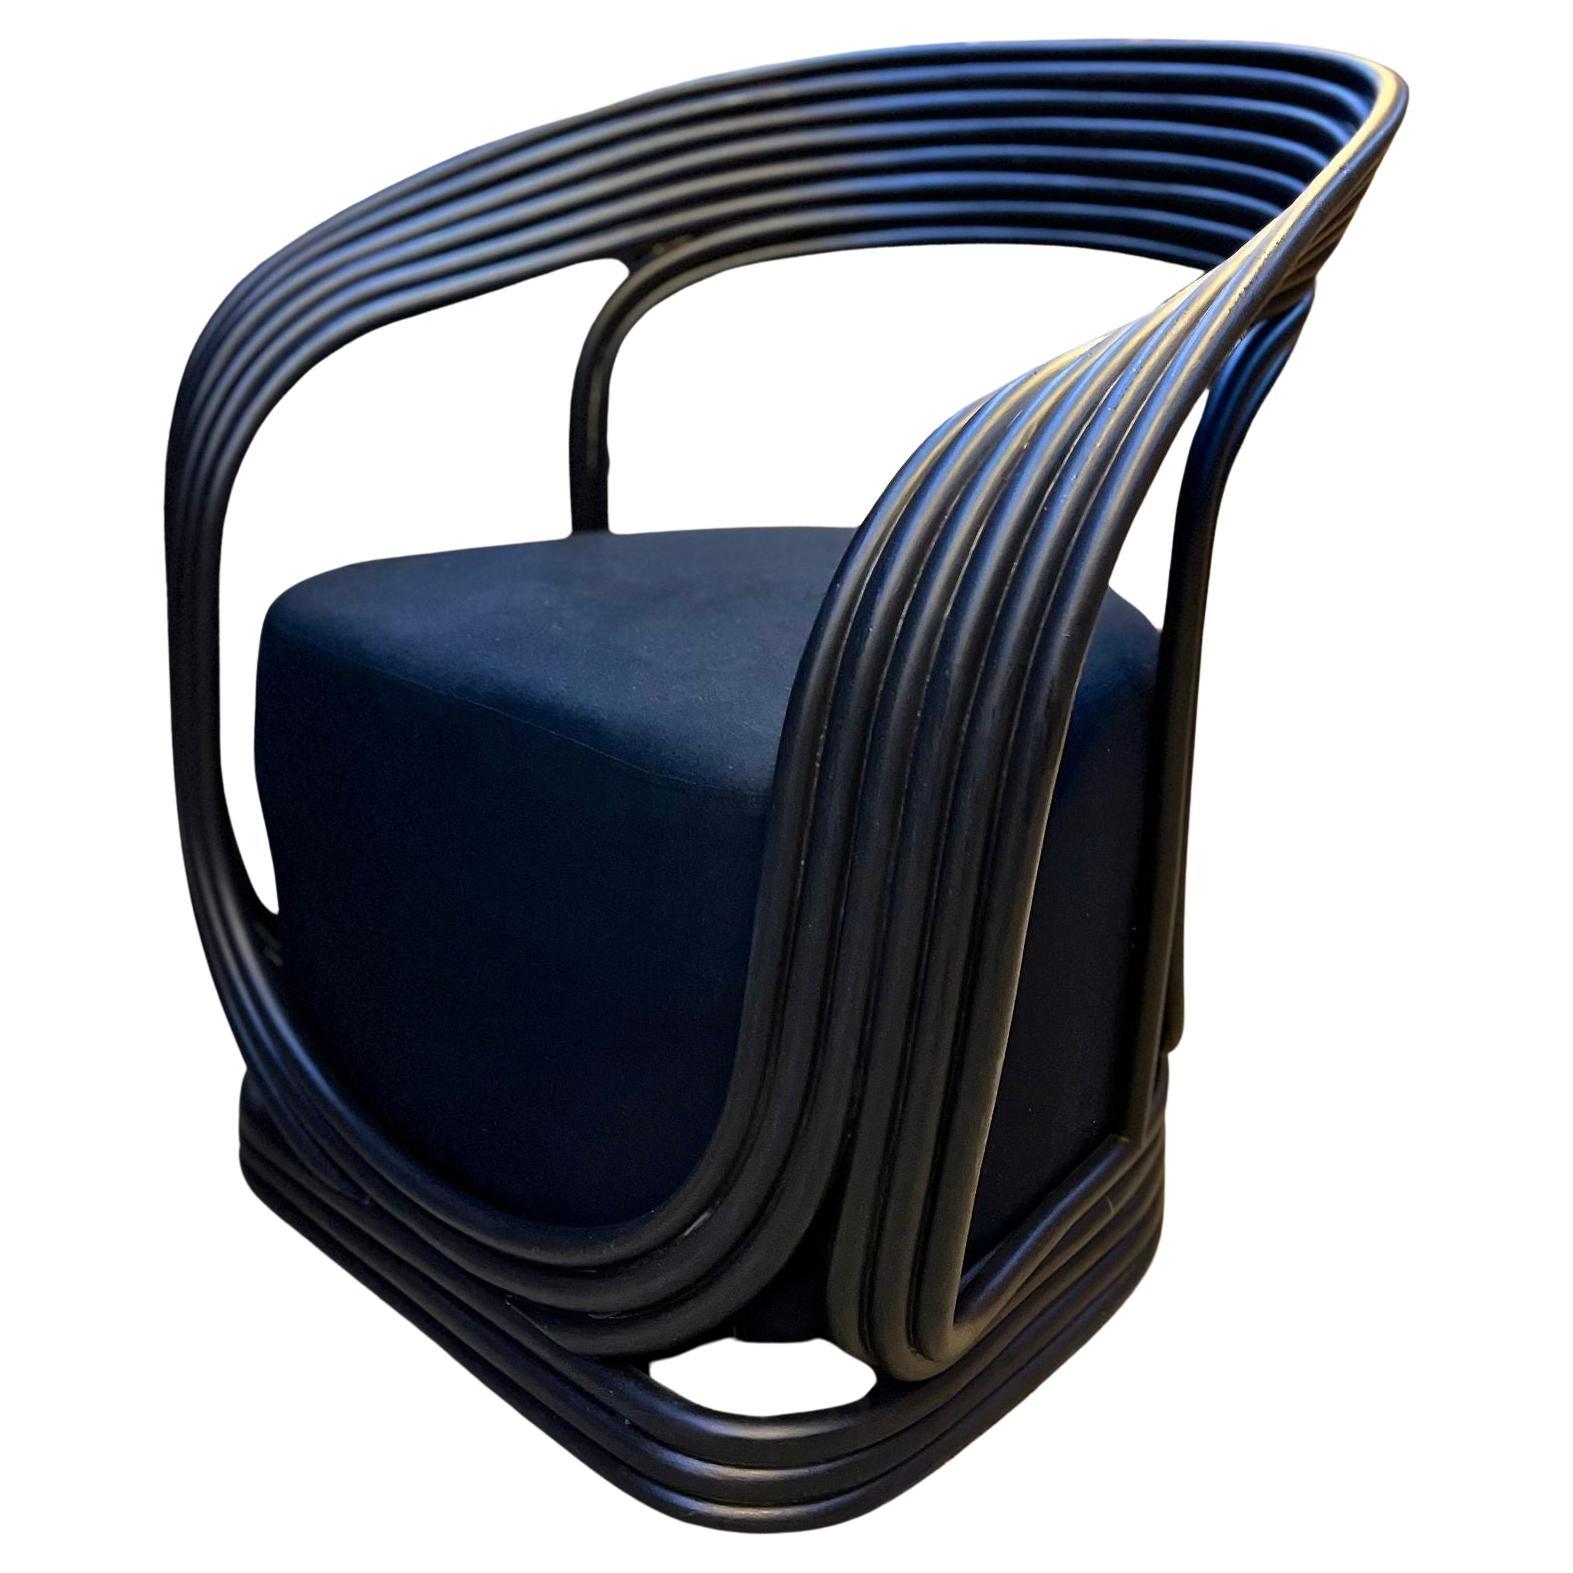 Fauteuil ou chaise longue contemporaine moderne en bambou noir, IDN 2023